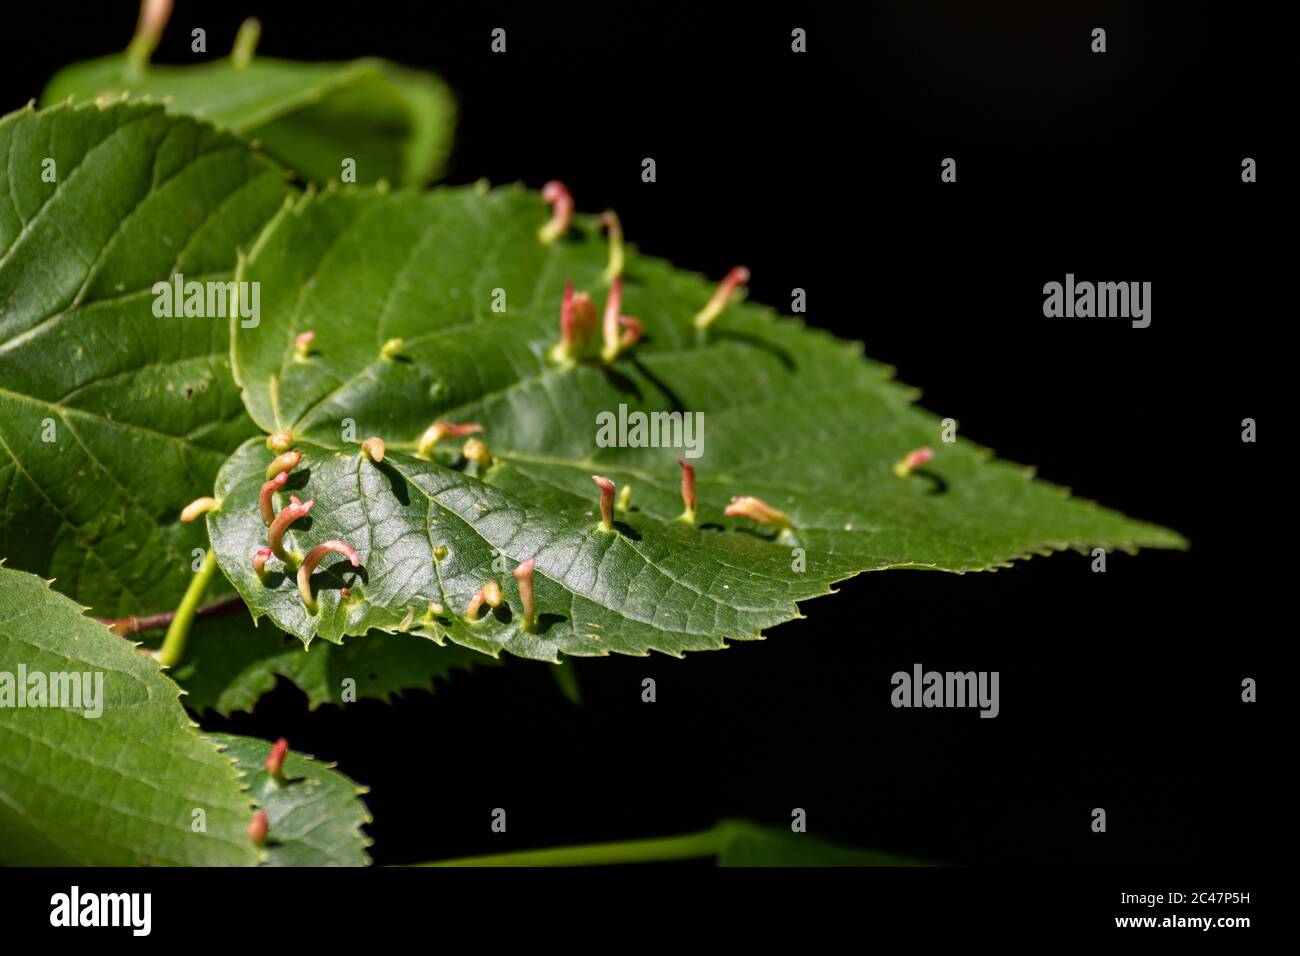 Blattgallen auf einem Blatt von Tilia americana, allgemein bekannt als American Basswood oder American Linden Stockfoto